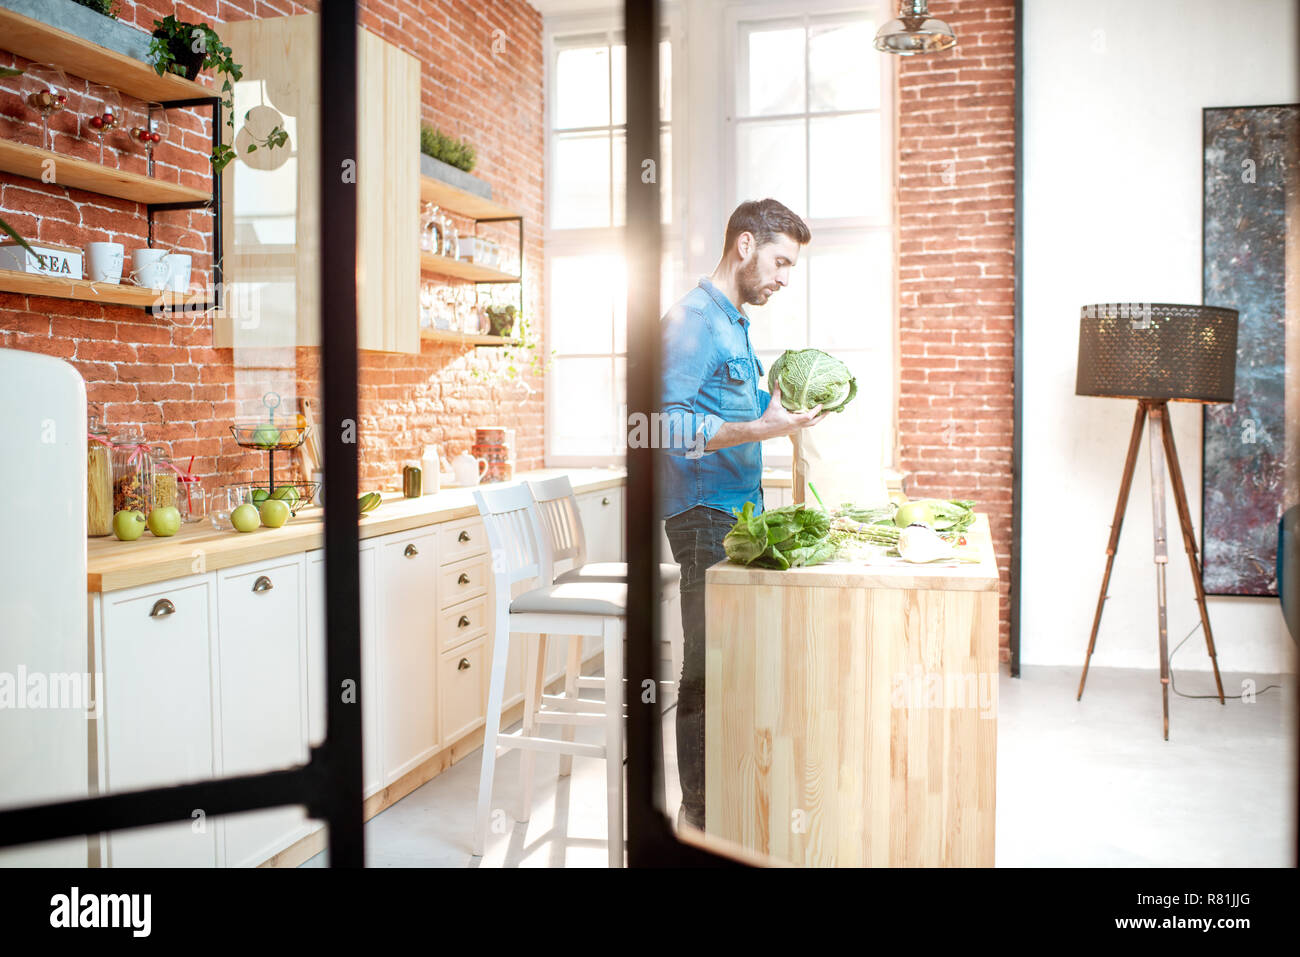 Hombre cocinar alimentos saludables, de pie en la cocina del apartamento bonito loft Foto de stock